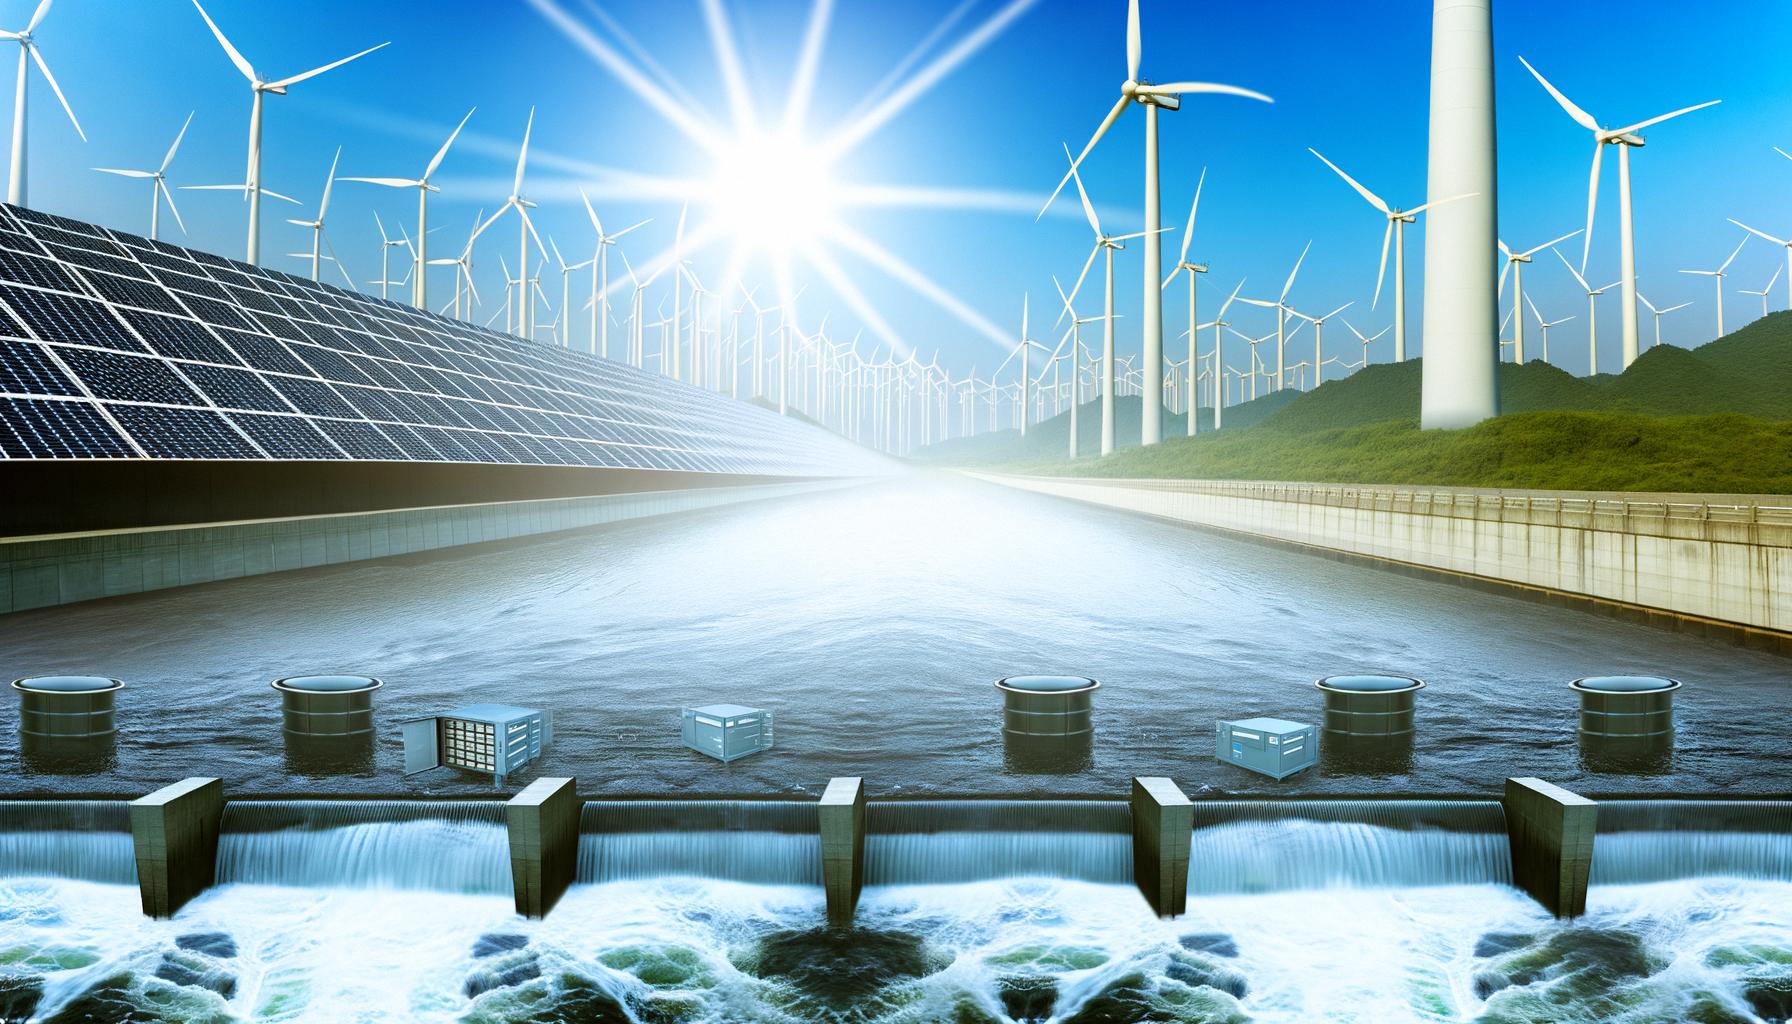 Renewable energy technologies rapidly advancing